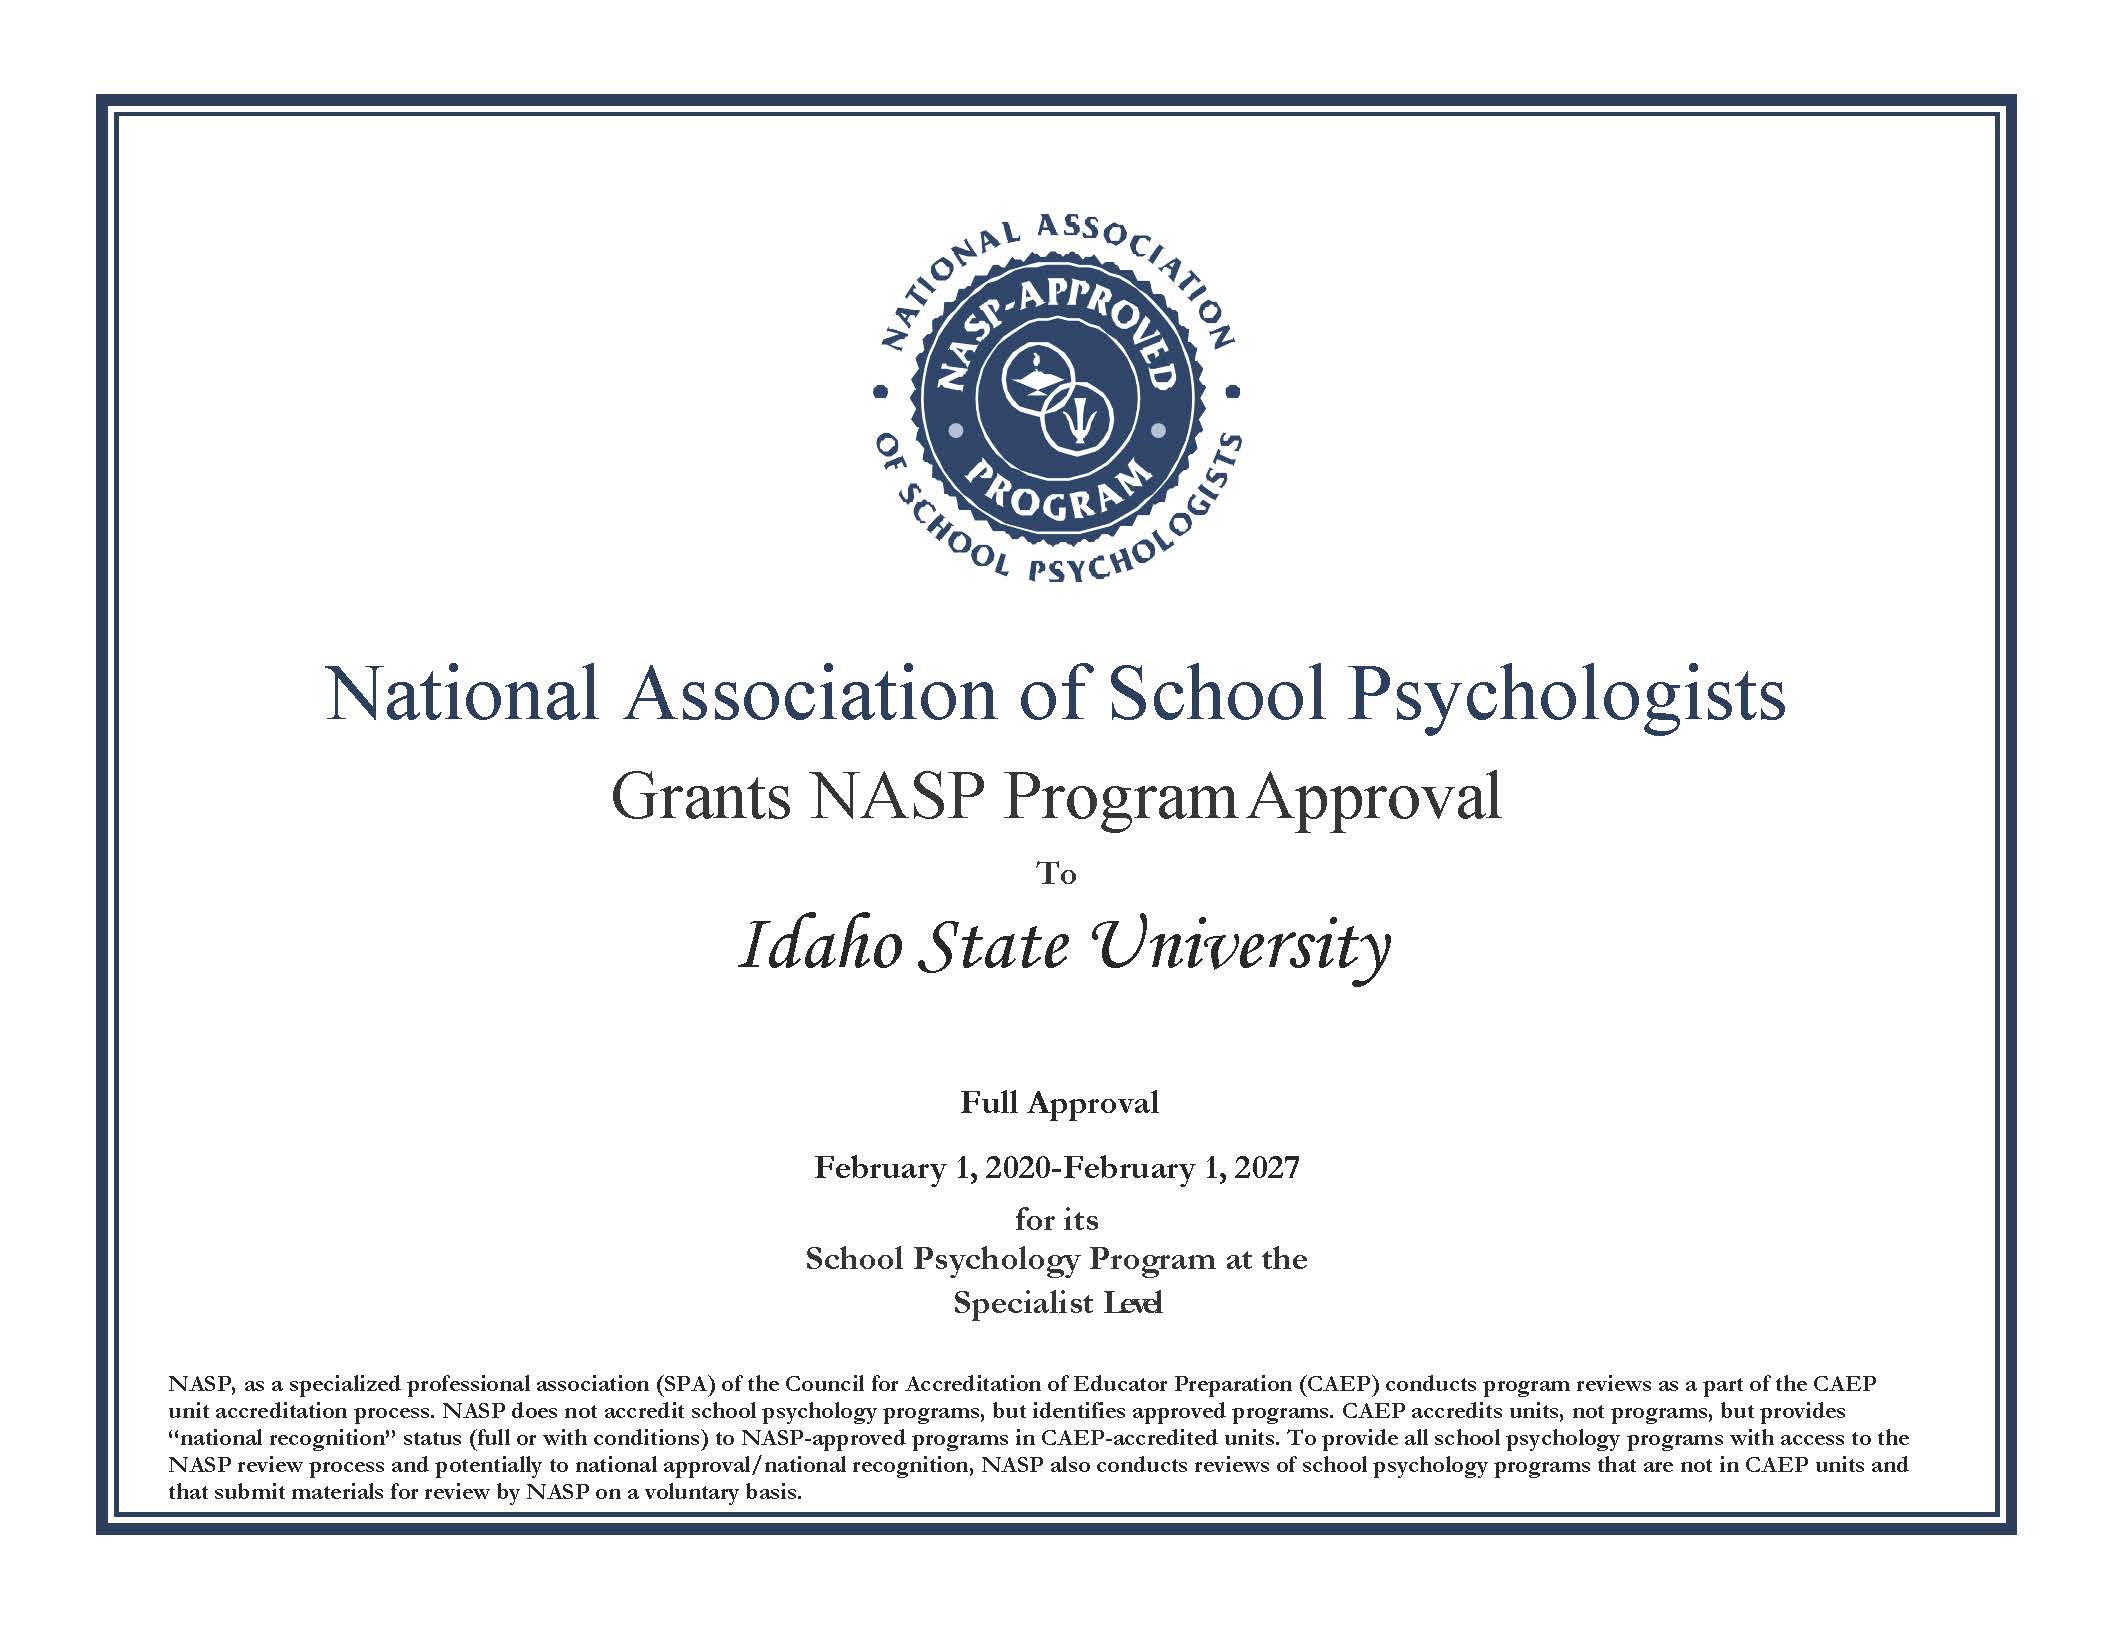 National Association of School Psychologists NASP Program Approval